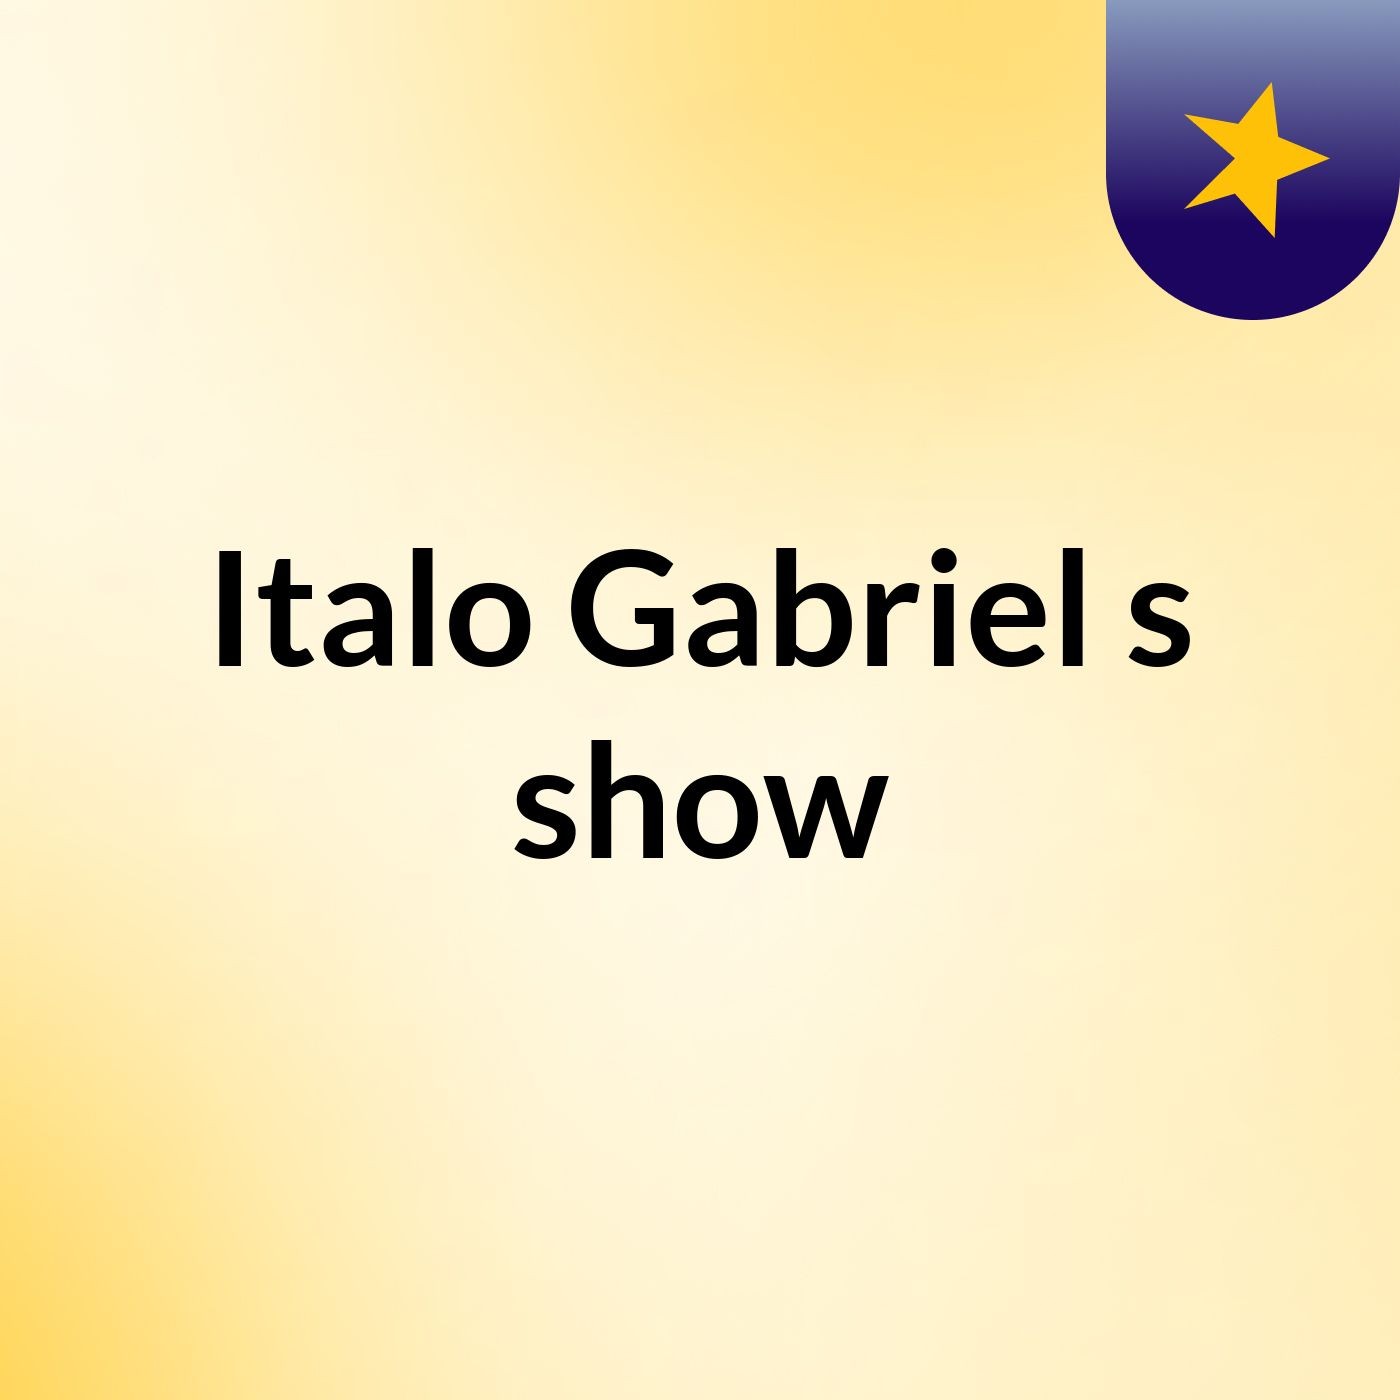 Italo Gabriel's show